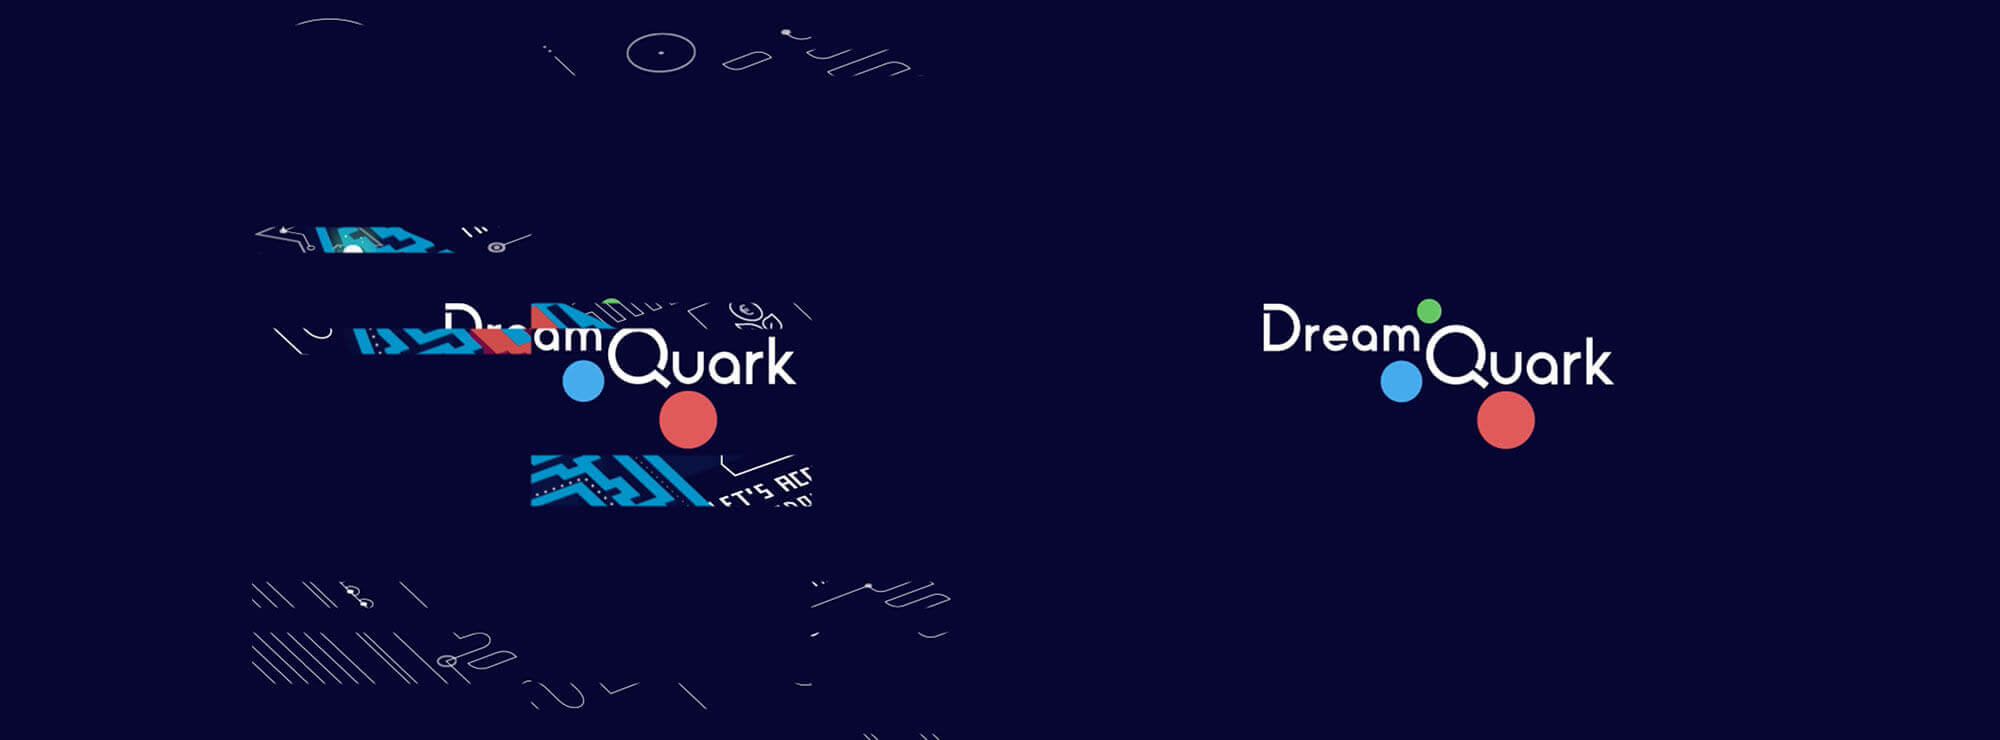 Dreamquark - un chemin tout tracé pour 2020